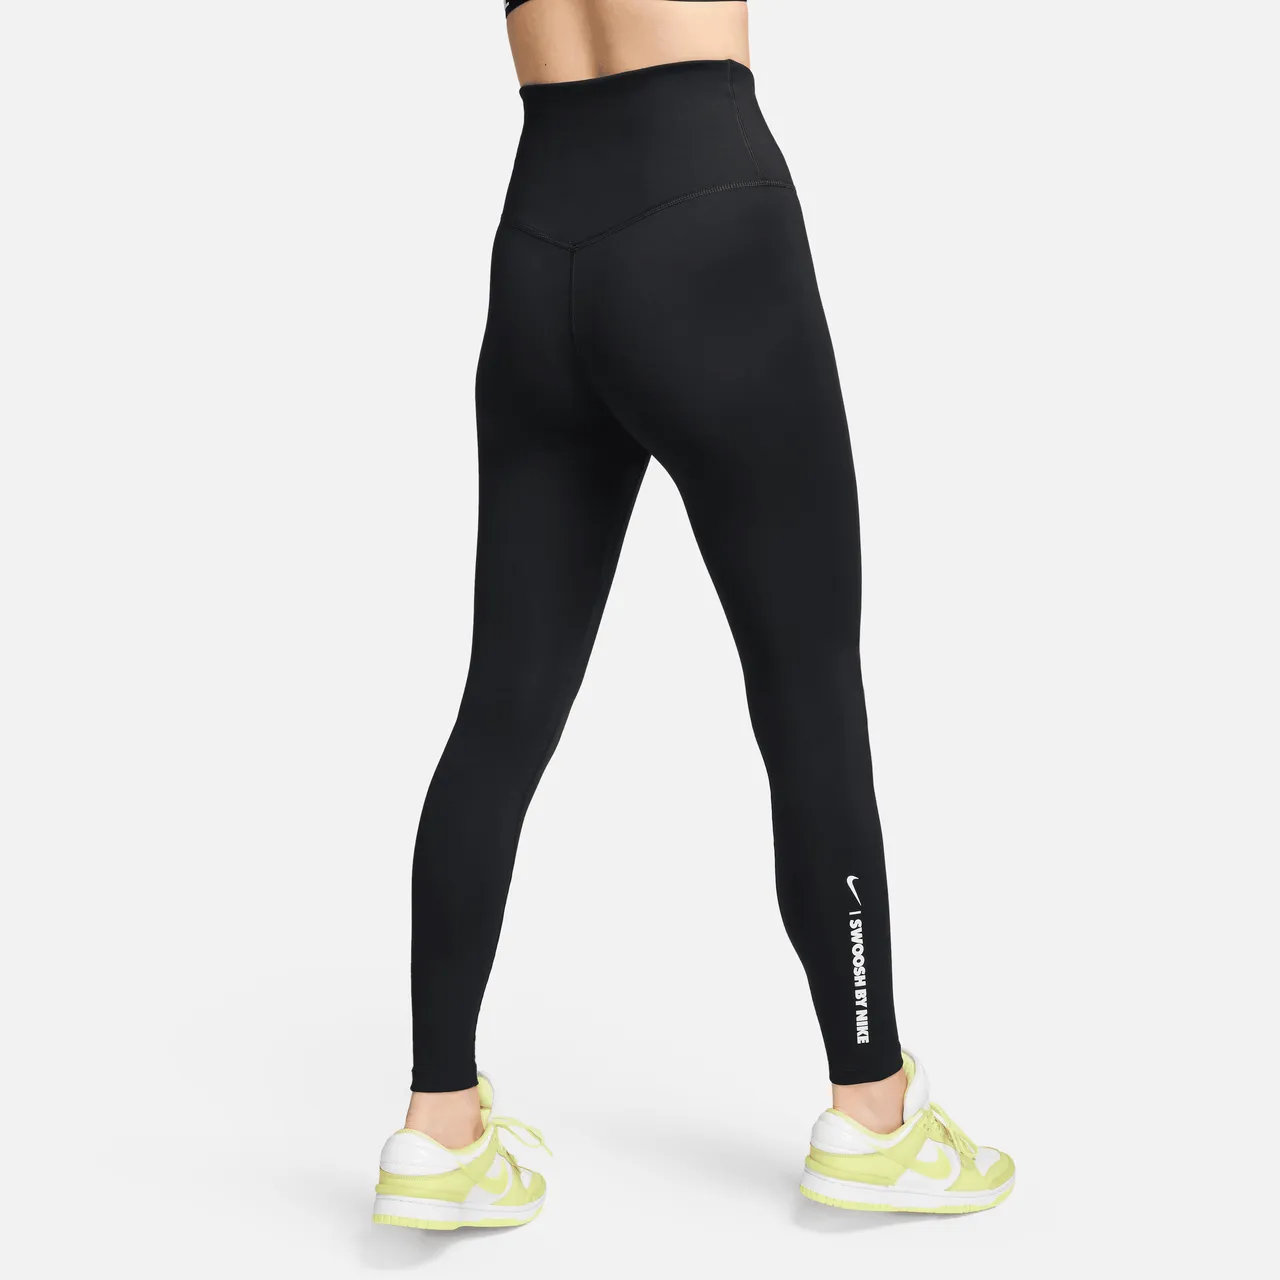 Nike One Women's High-Waisted Full-Length Leggings - Black - Polyester